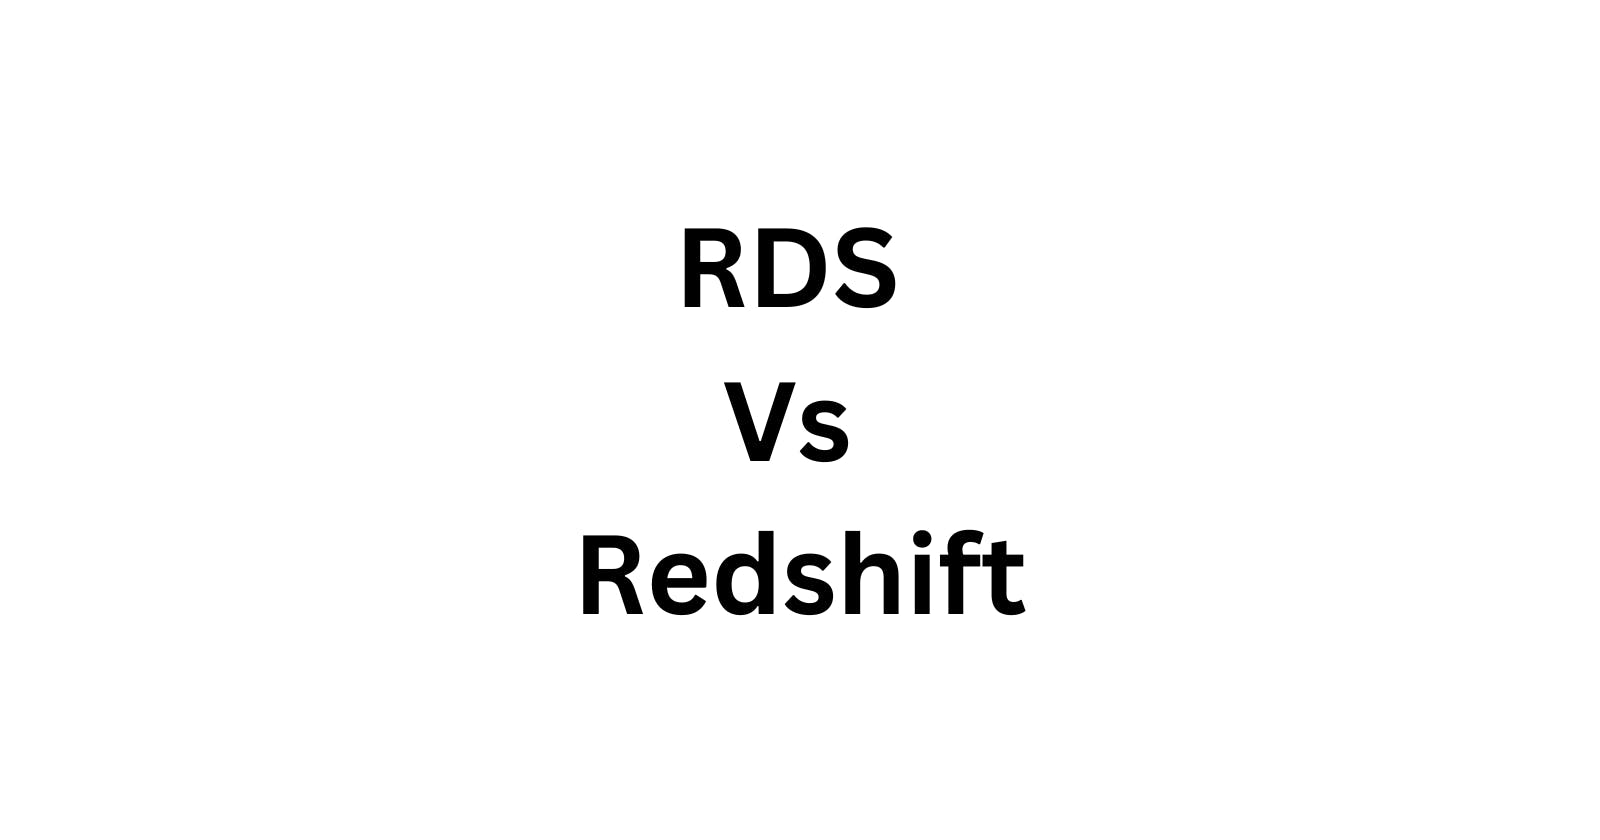 RDS Vs Redshift